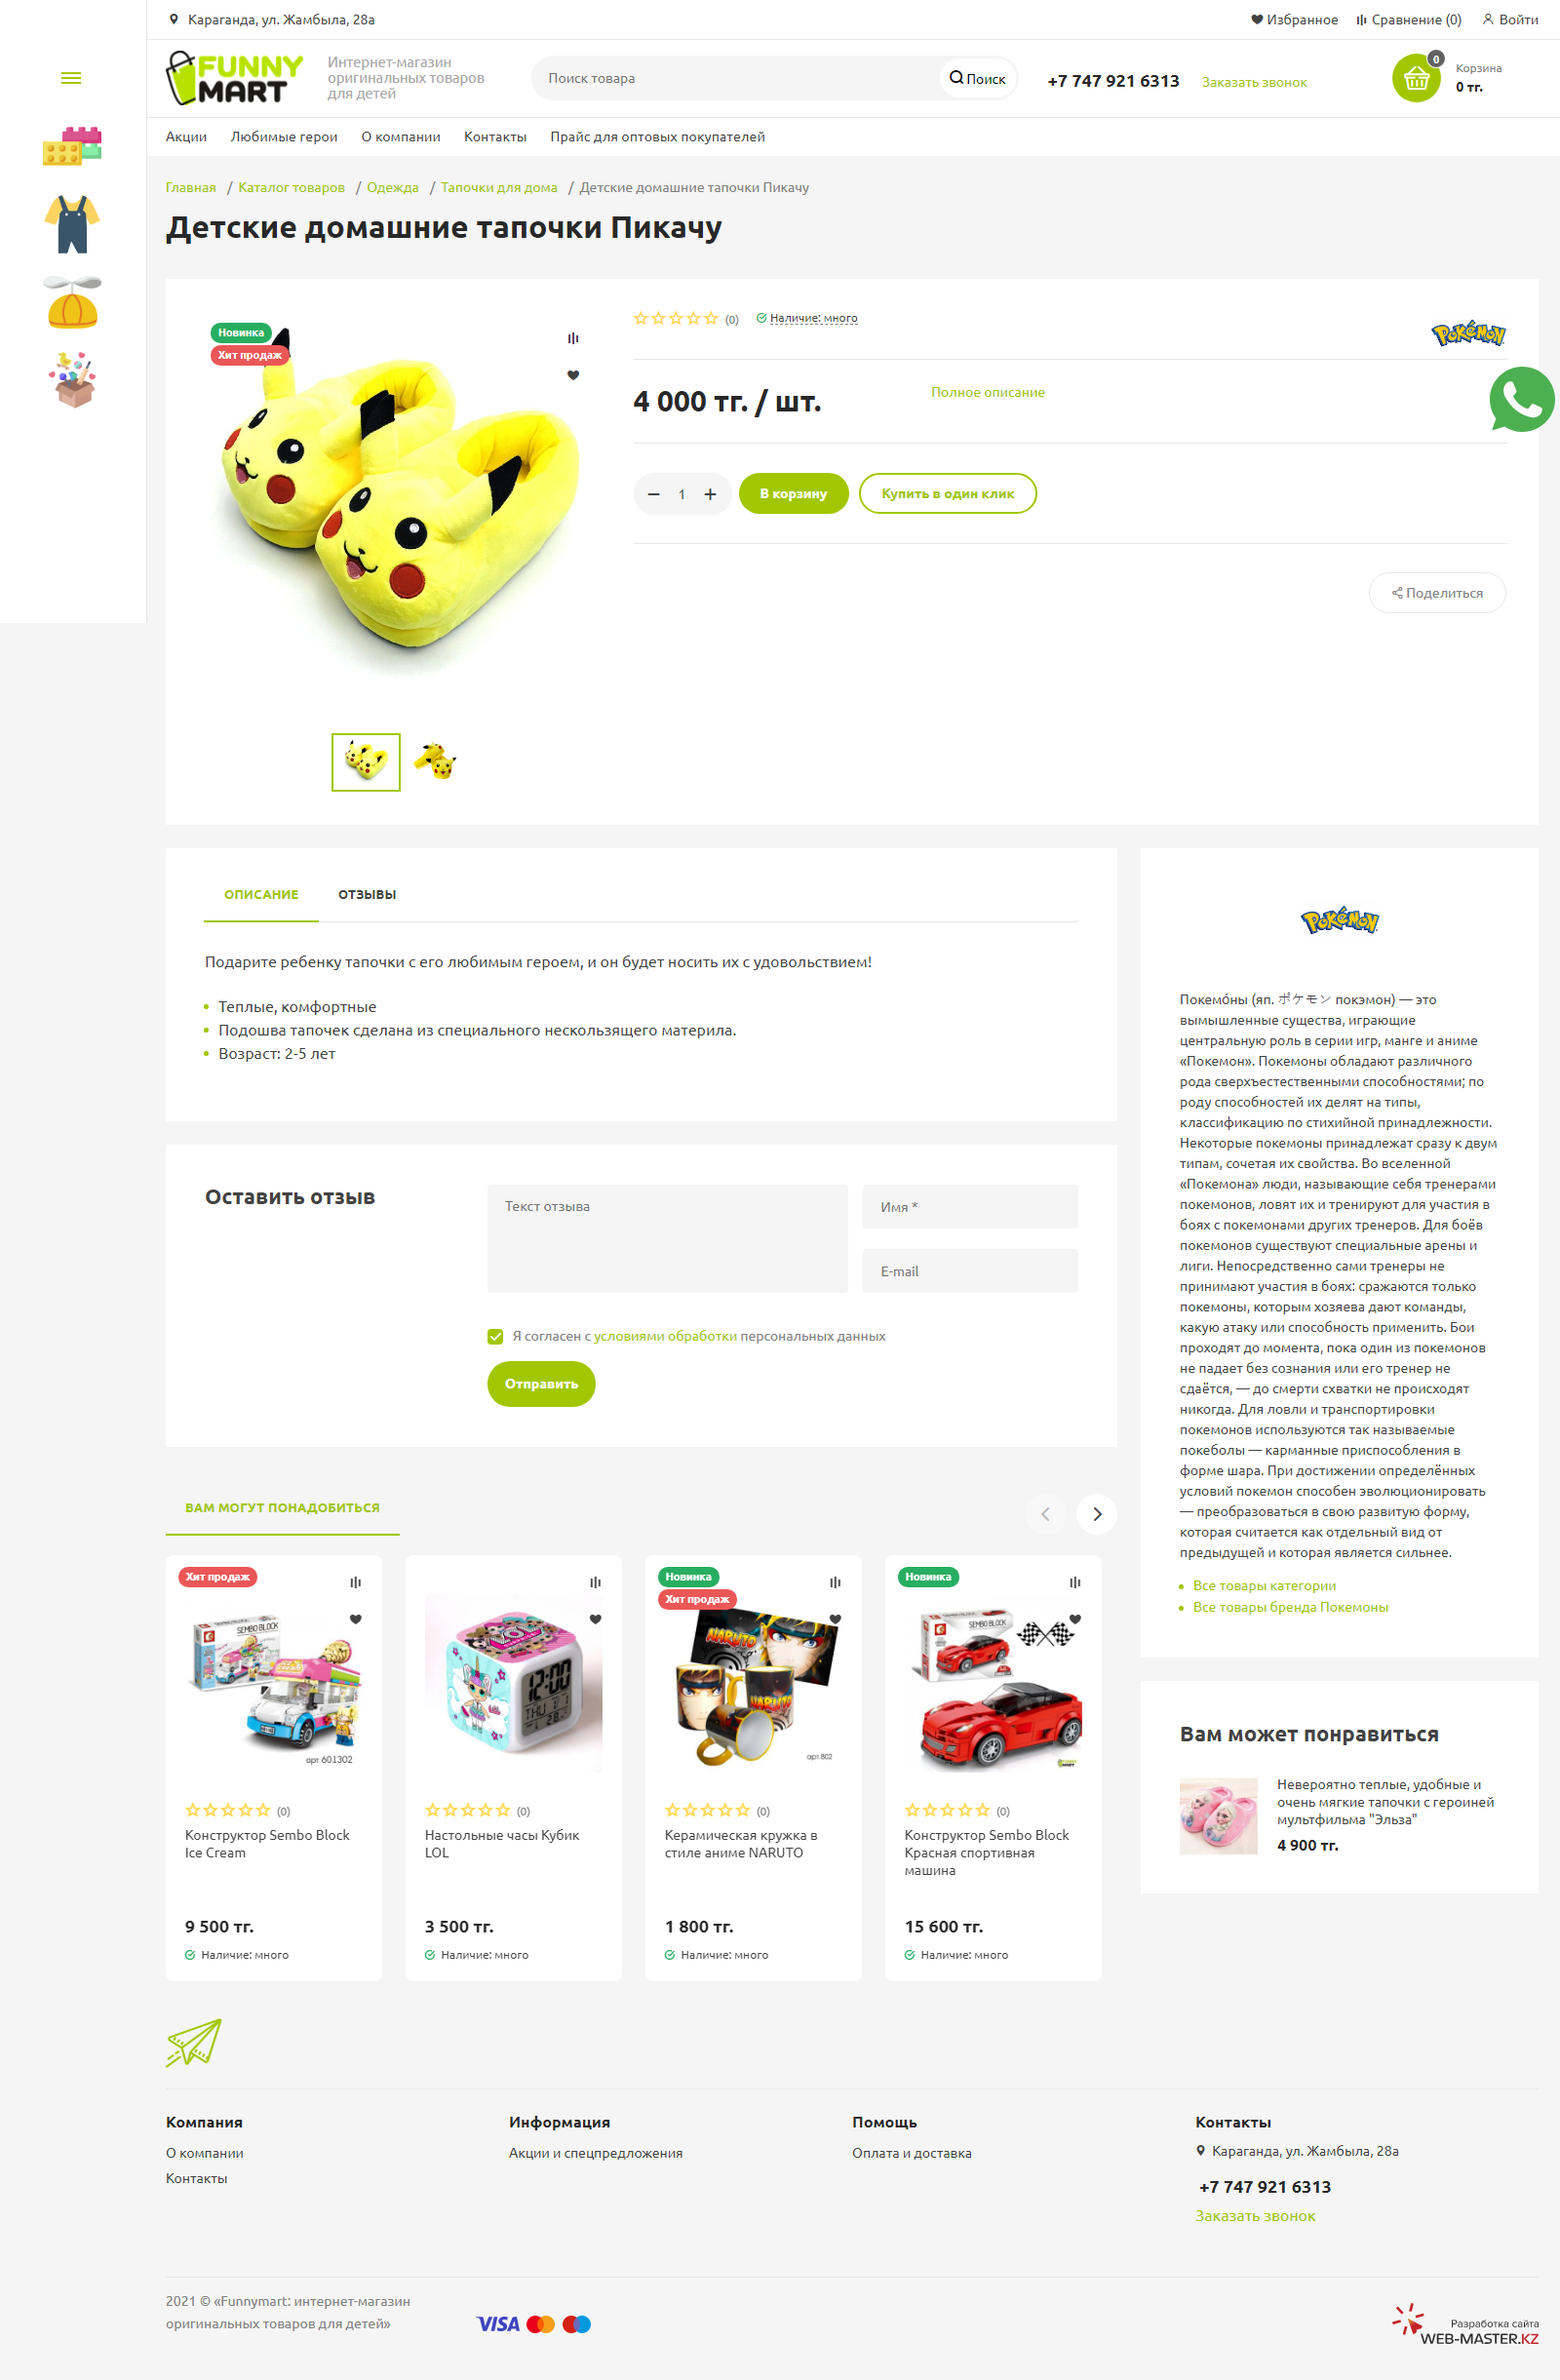 интернет-магазин товаров для детей funnymart.kz